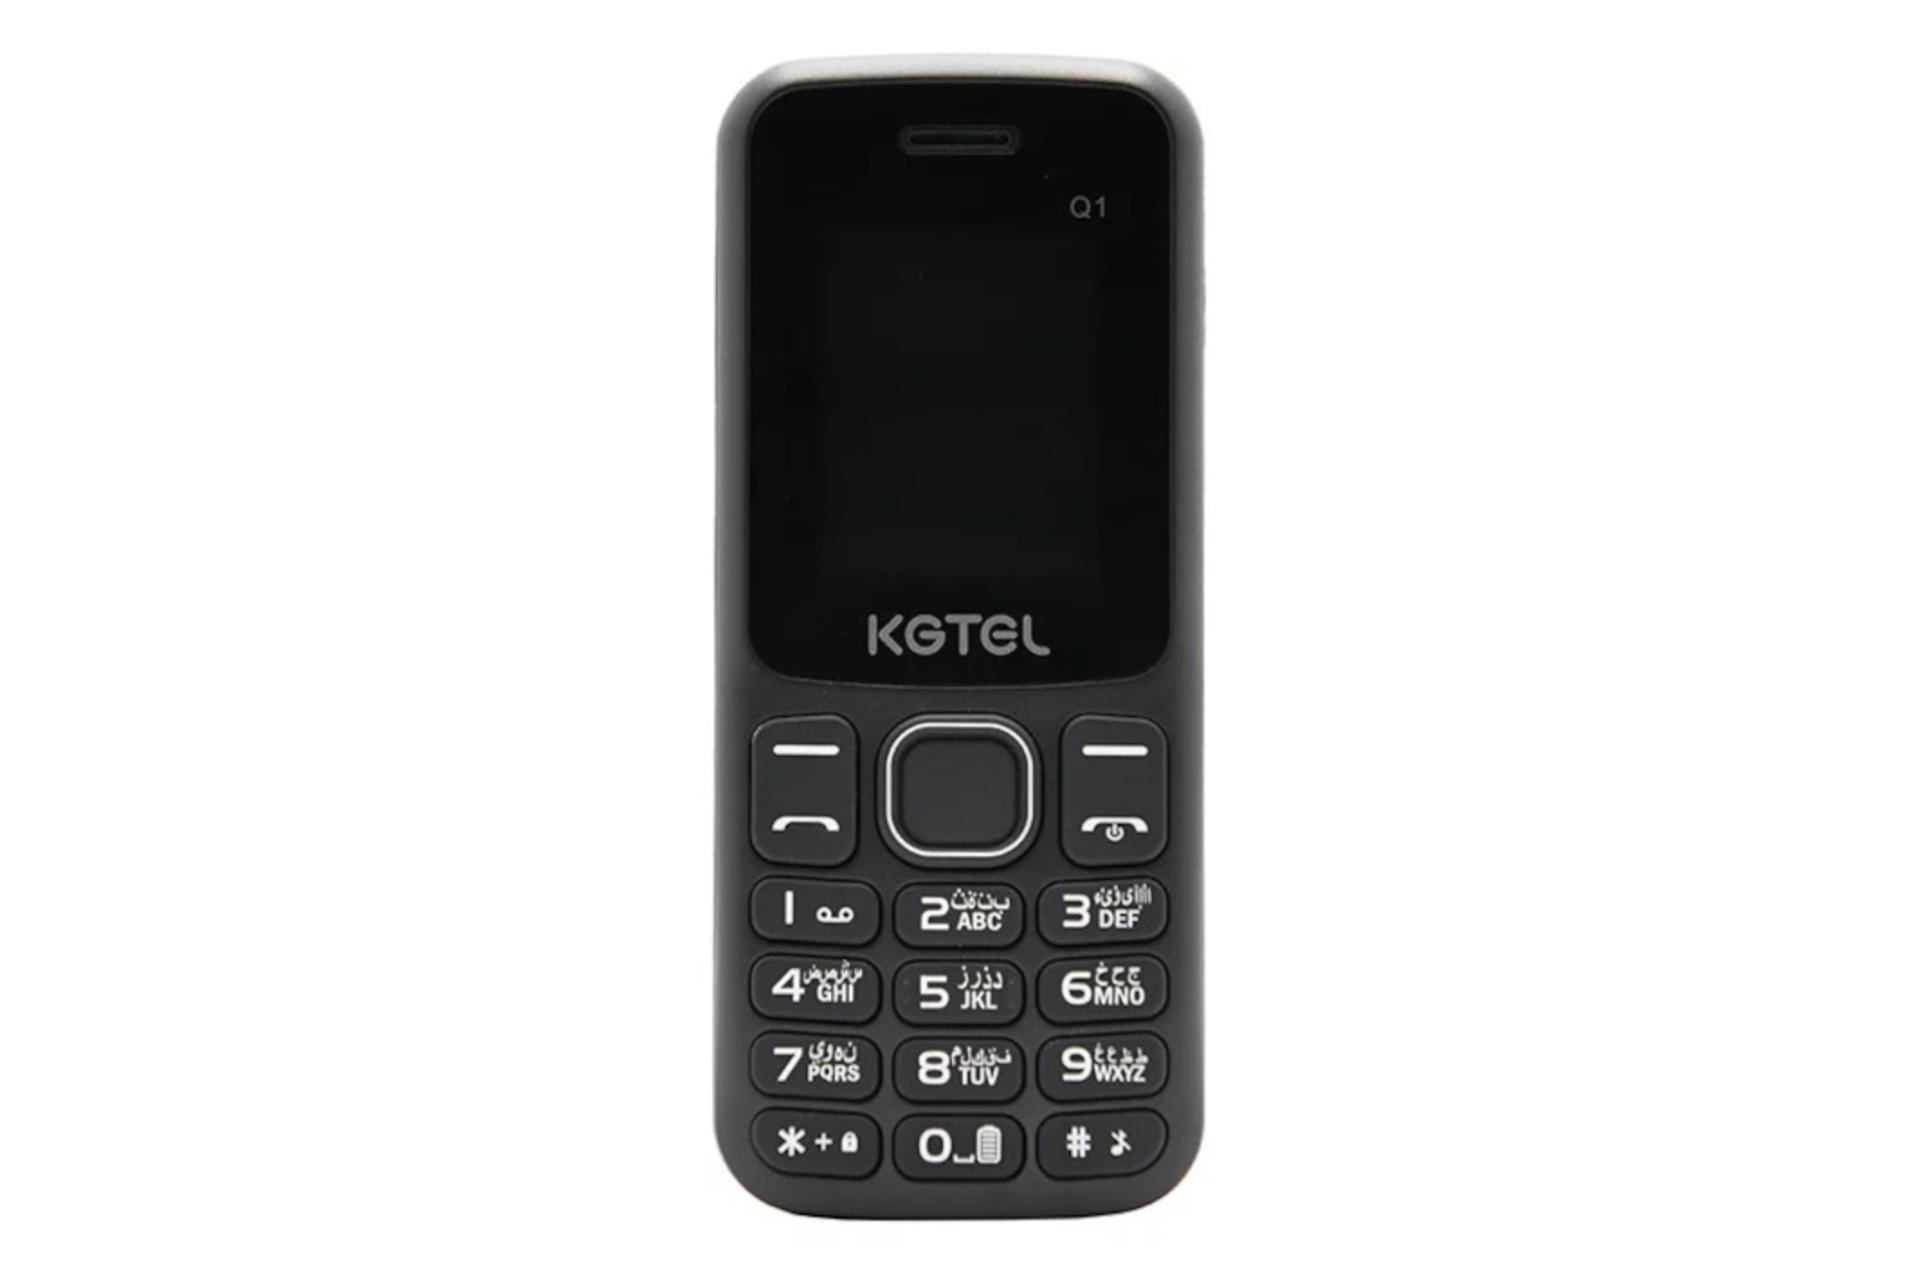 گوشی موبایل کاجیتل KGTEL Q1